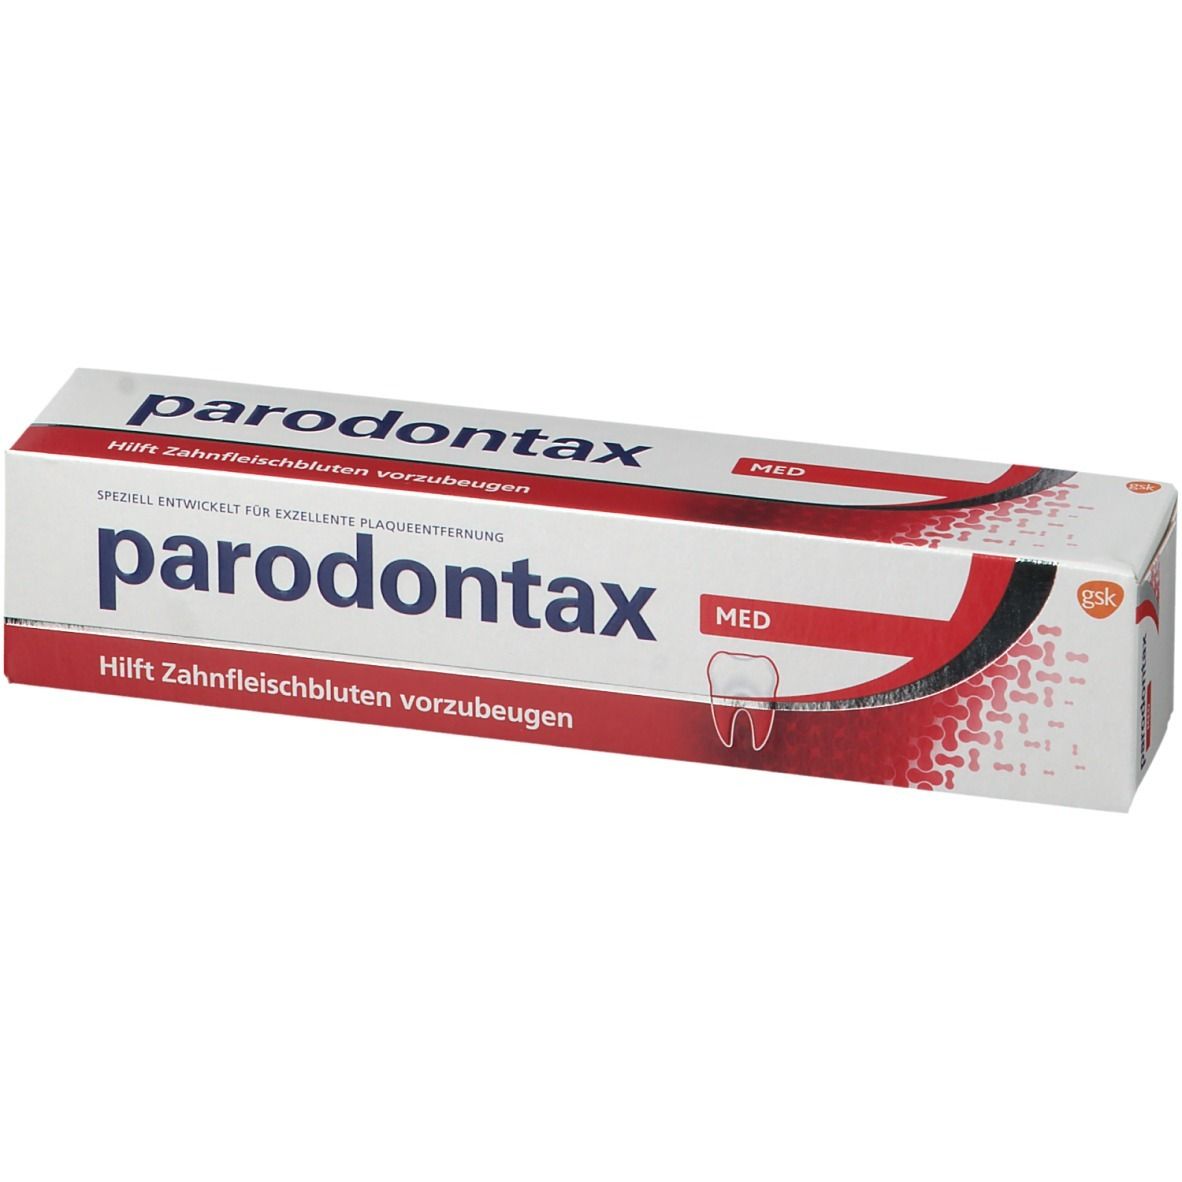 parodontax Med®